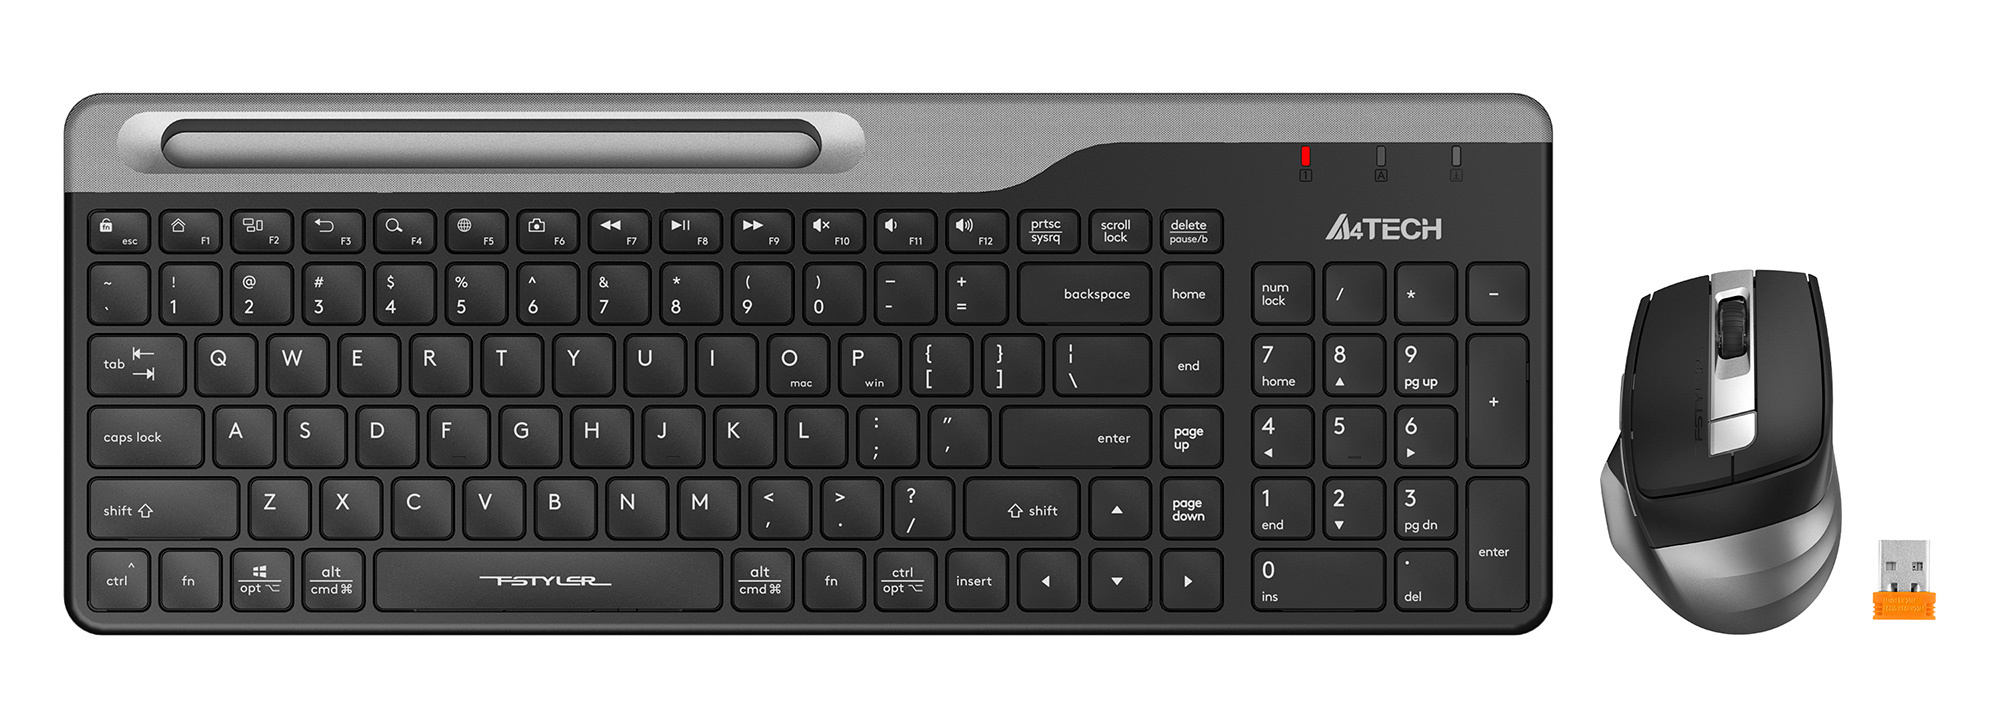 Клавиатура + мышь A4Tech Fstyler FB2535C, Bluetooth / USB, черный/серый